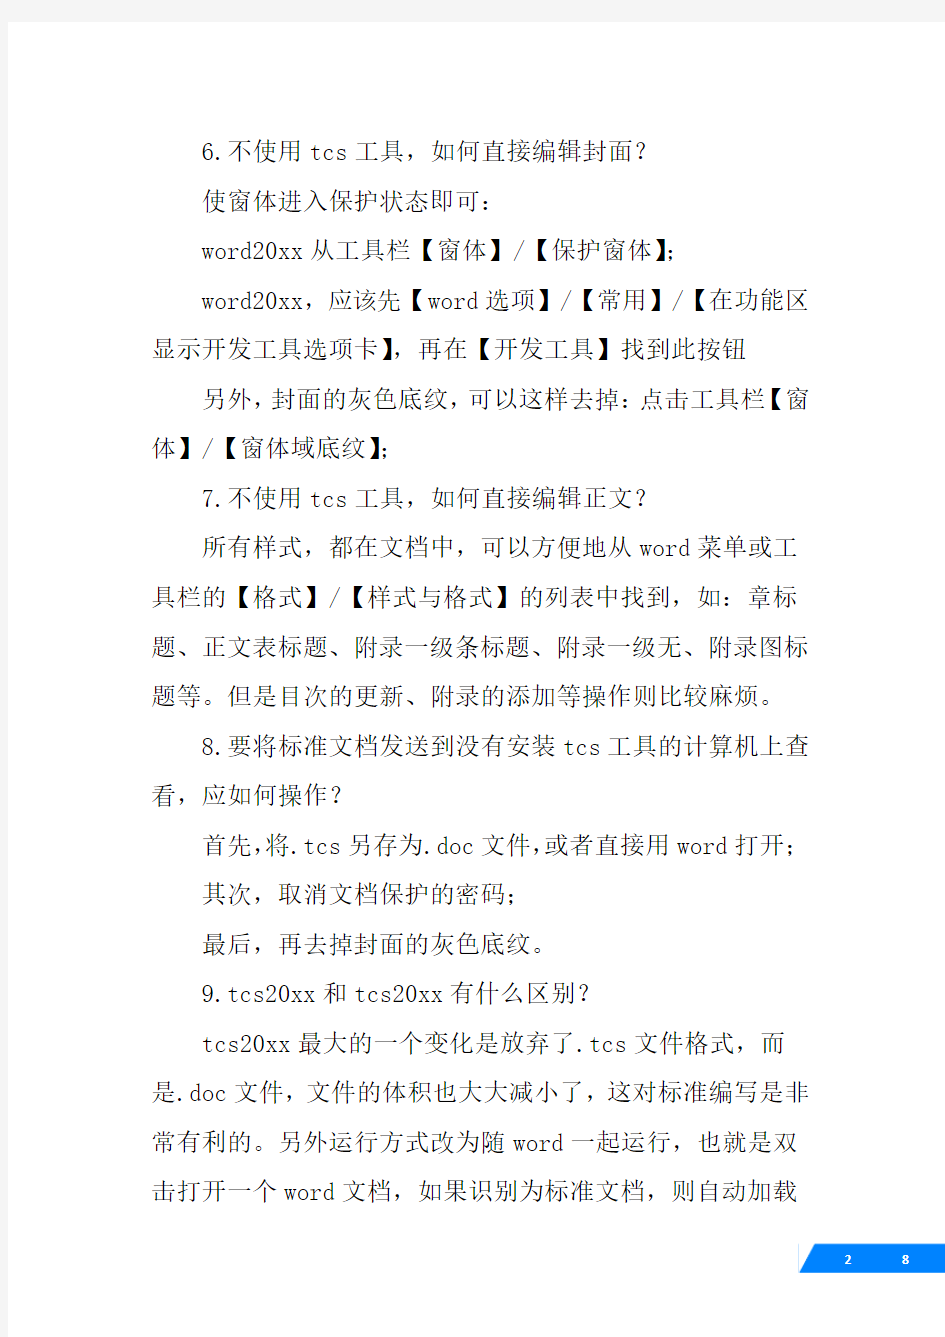 中国标准编写模板,tcs,20XX